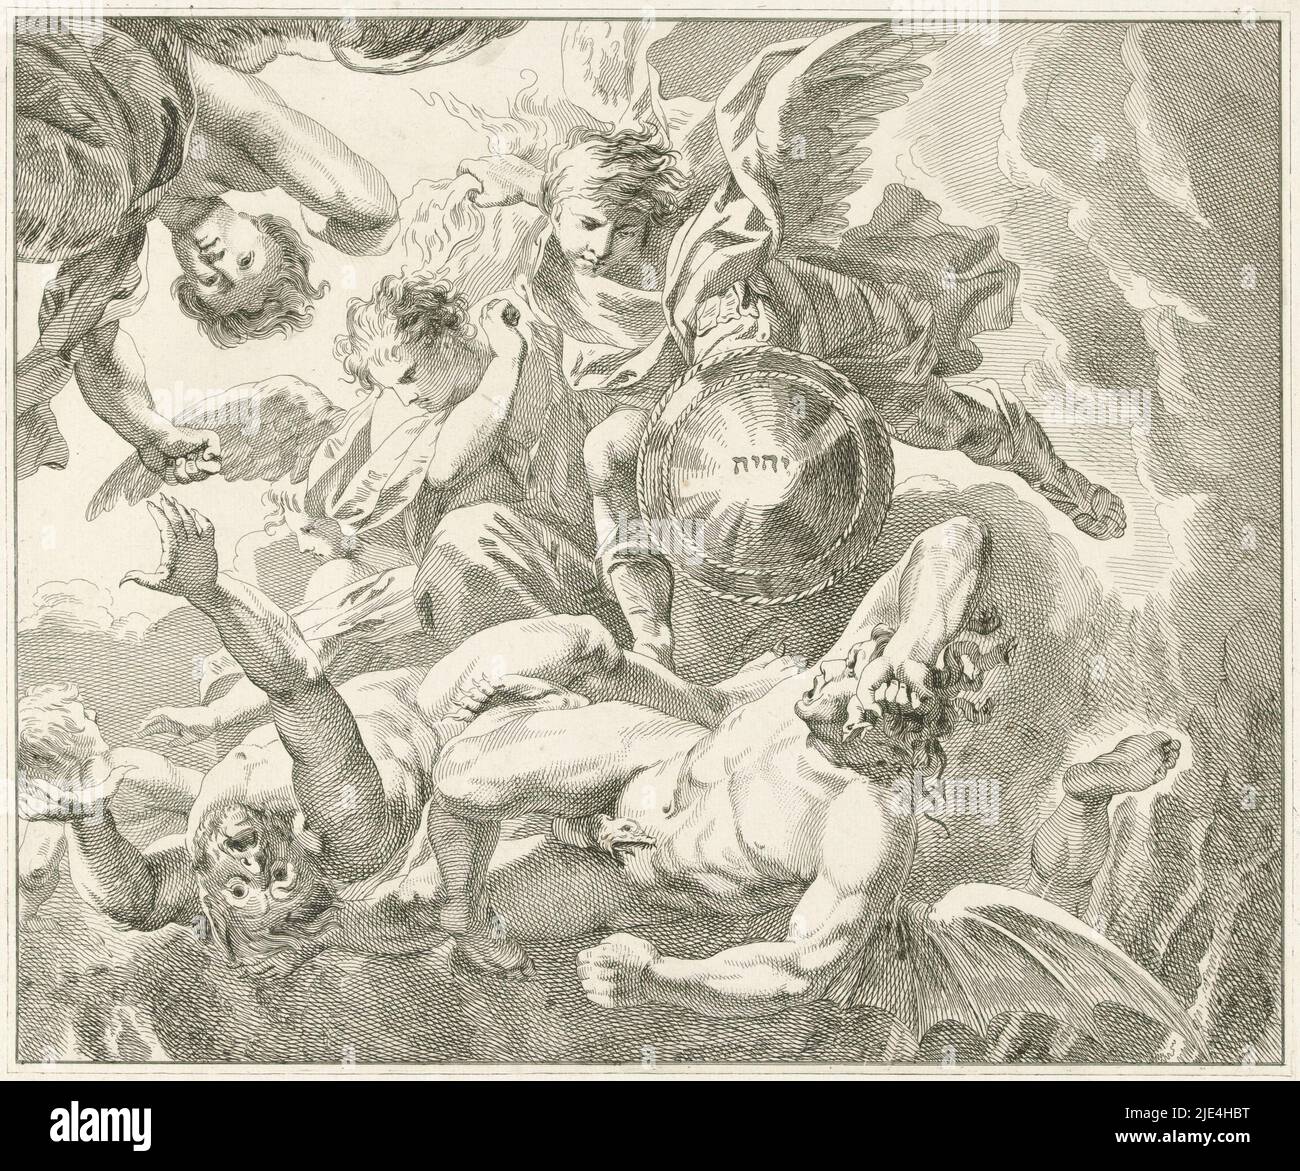 Michael subdues le diable, Roelof van der Meulen, 1824, l'archange Michael, avec d'autres anges, jette le diable hors du ciel, qui tombe sous forme humaine, avec des cheveux comme des serpents et des ailes de dragon. Michael tient d'une part un faisceau de flammes et de l'autre son bouclier avec le monogramme Christ., Imprimeur: Roelof van der Meulen, (mentionné sur l'objet), Amsterdam, 1824, papier, gravure, gravure, h 333 mm × l 395 mm Banque D'Images